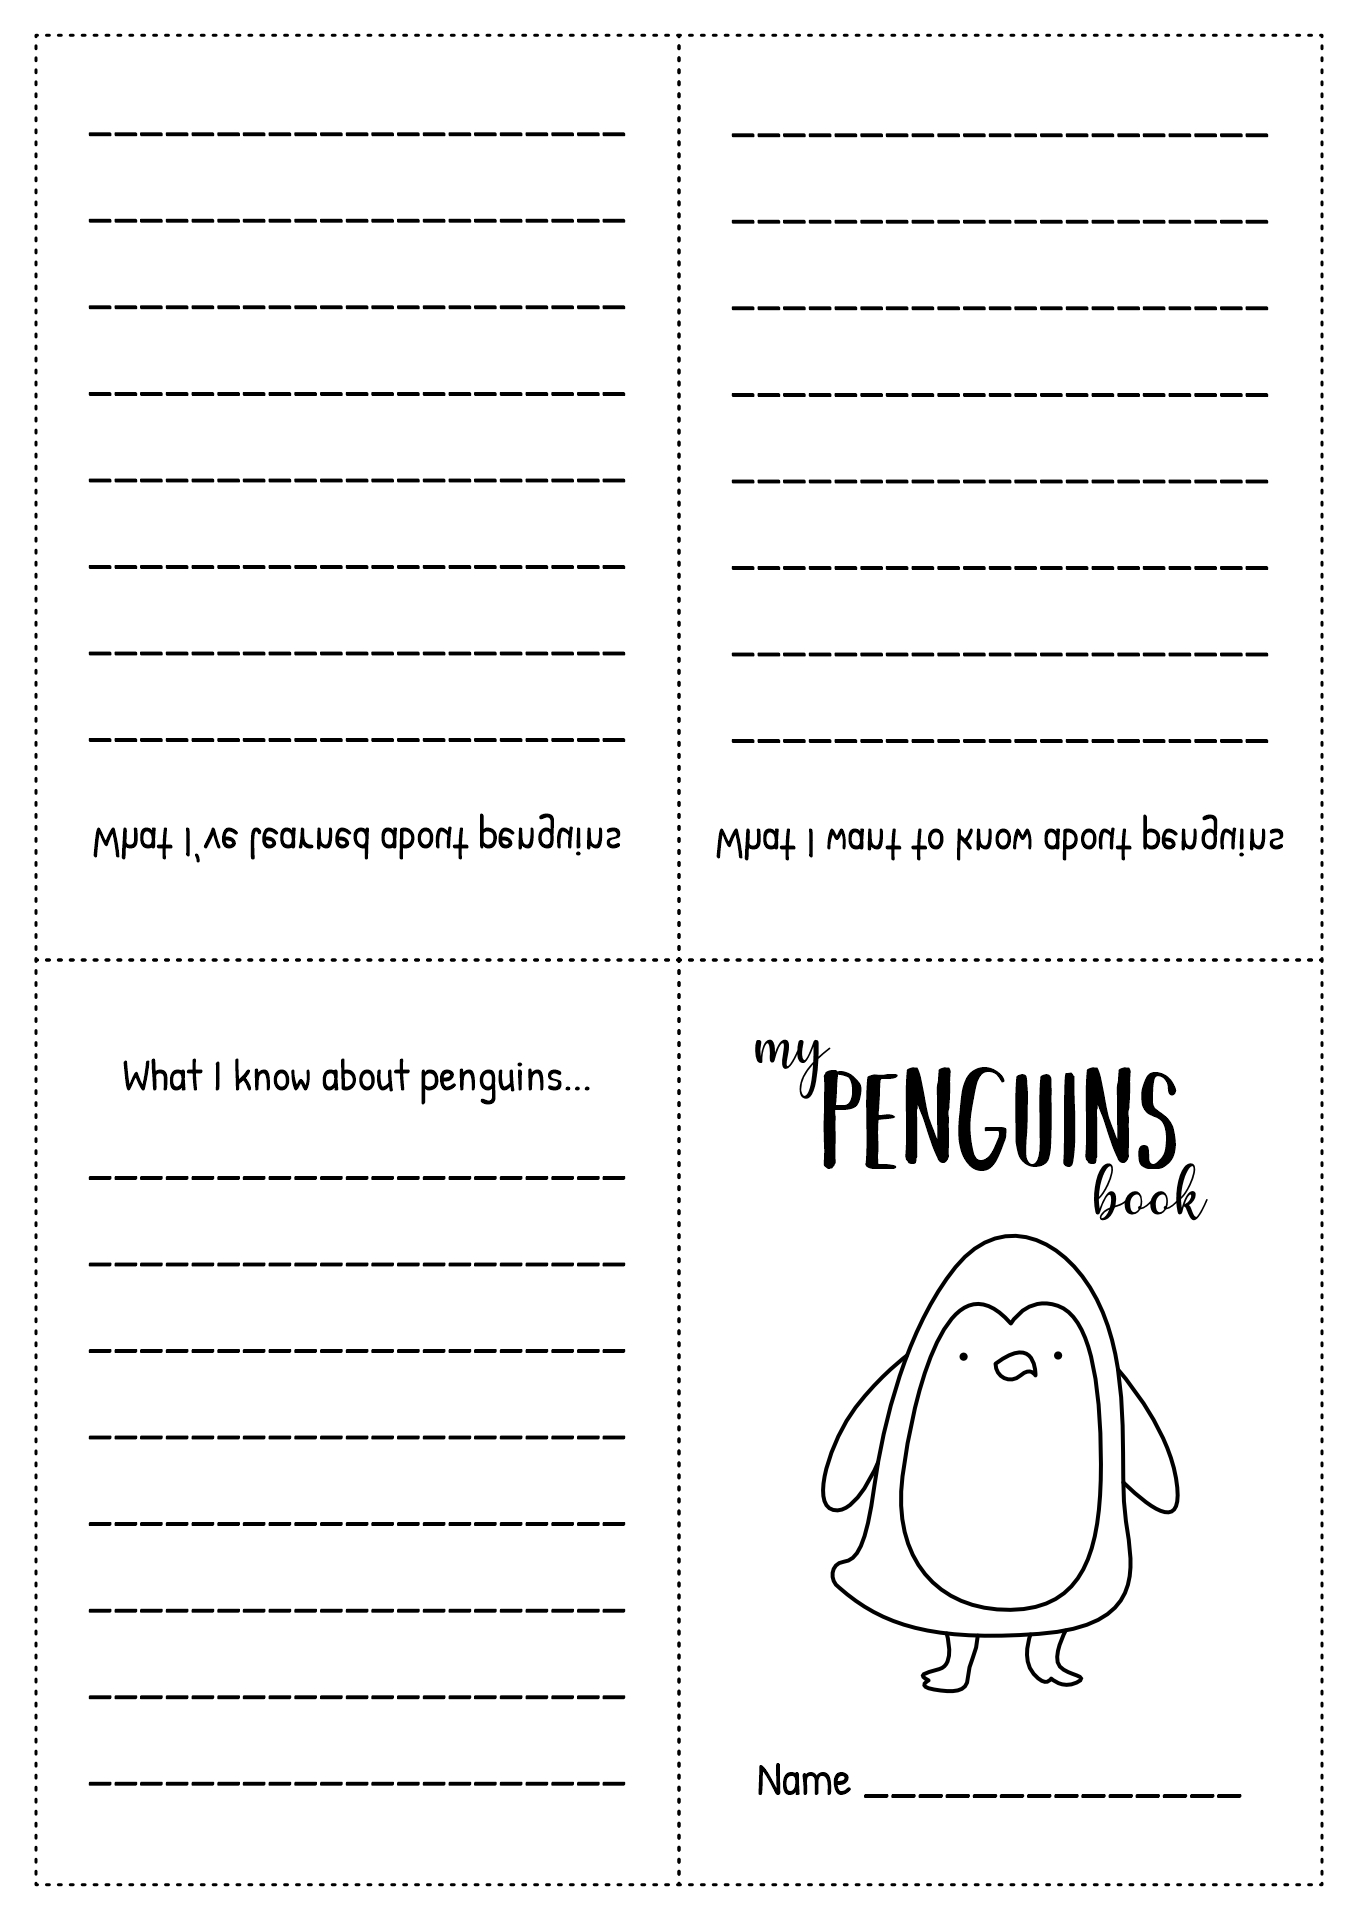 Penguin Book Activities